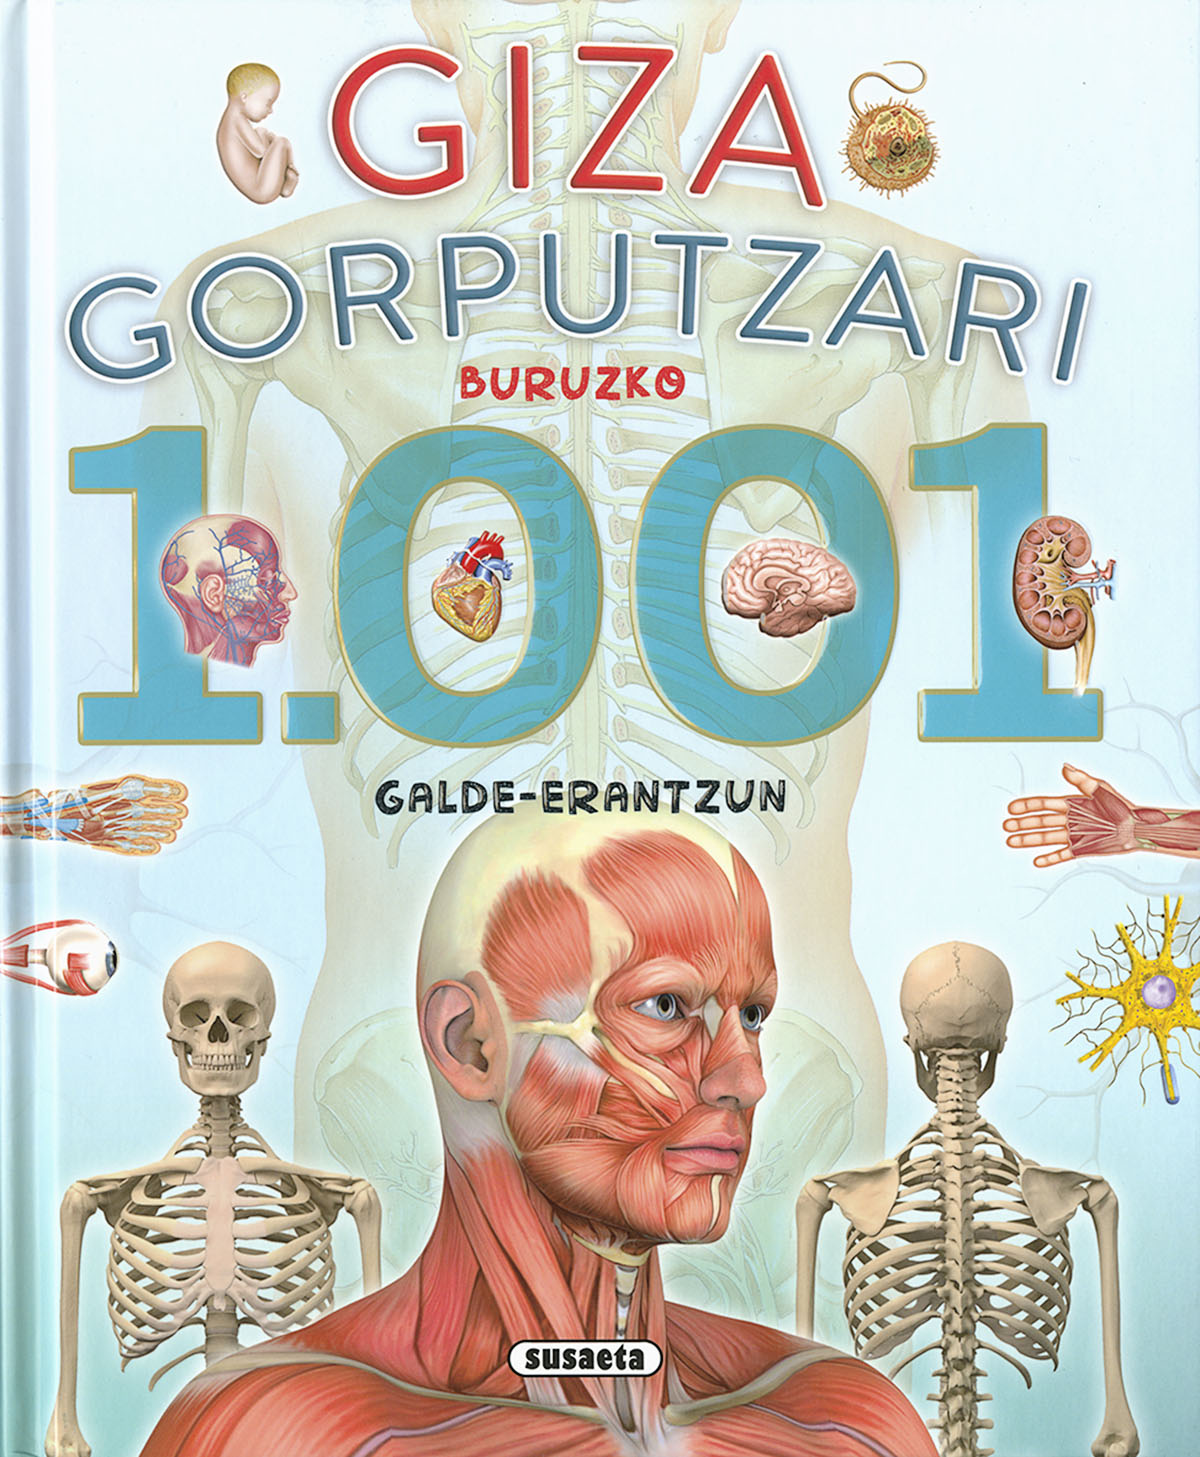 Giza gorputzari buruzko 1.001 galde-erantzun